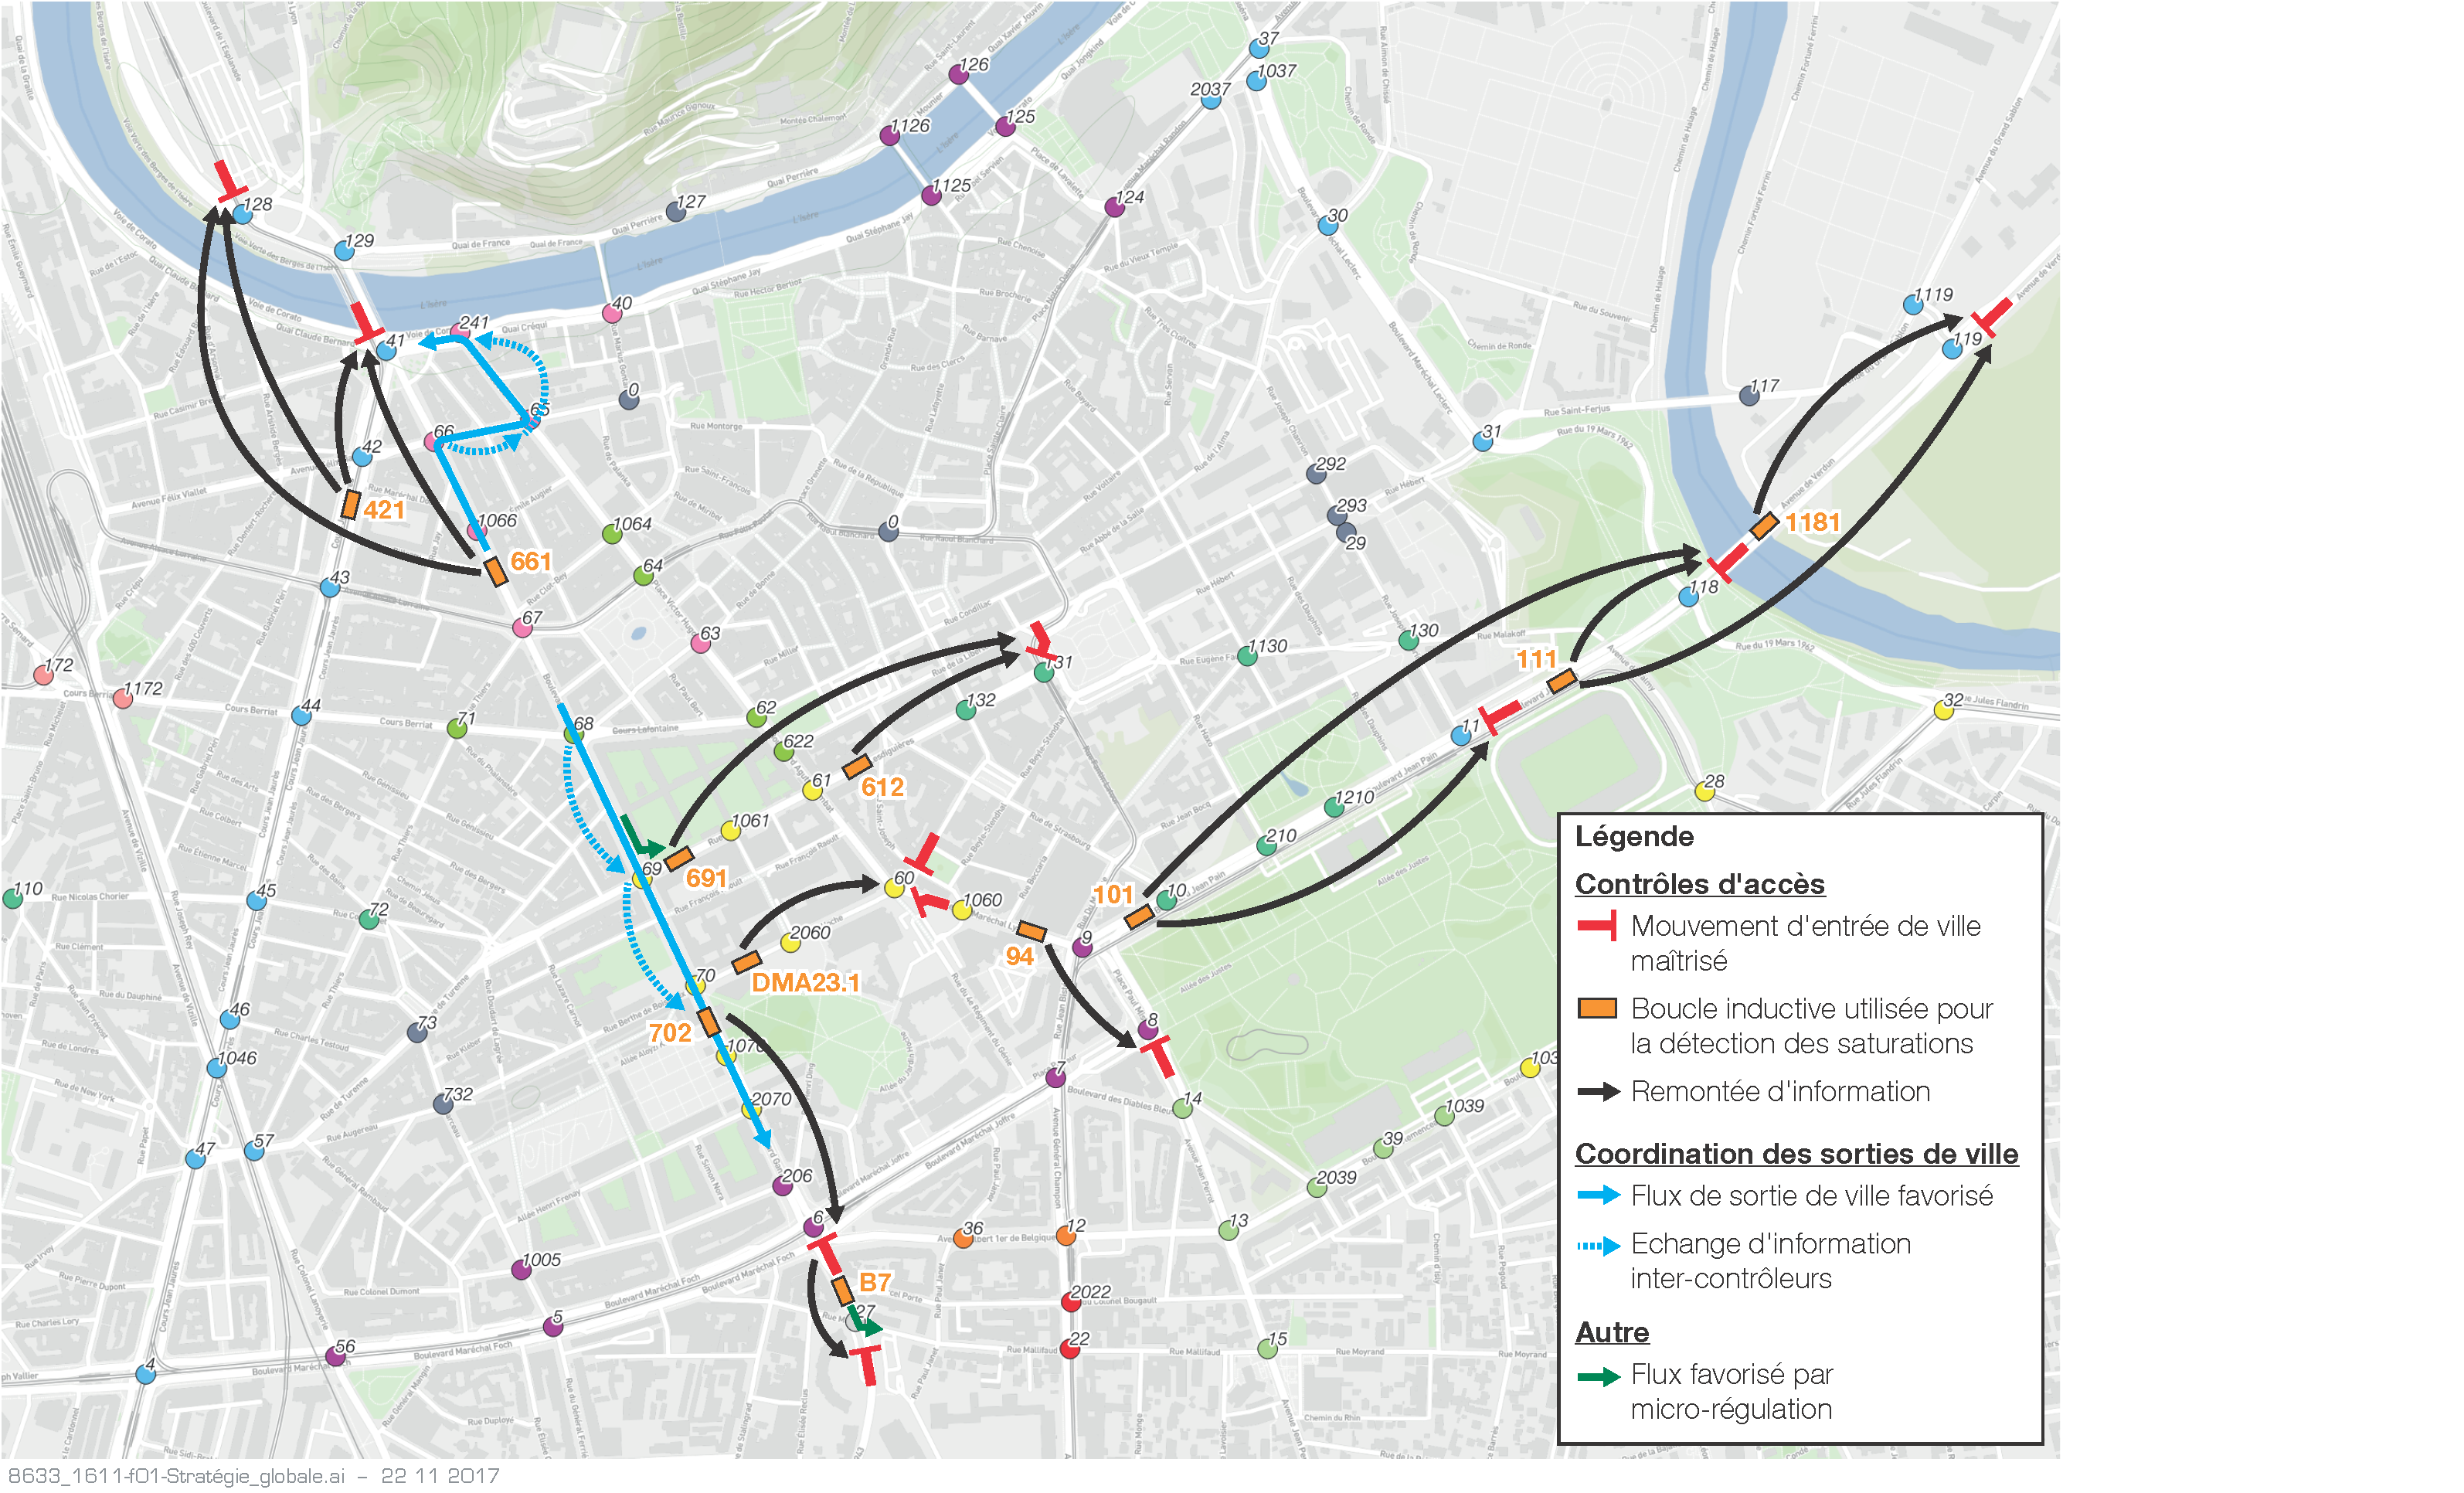 Stratégie de régulation retenue pour le centre-ville de Grenoble